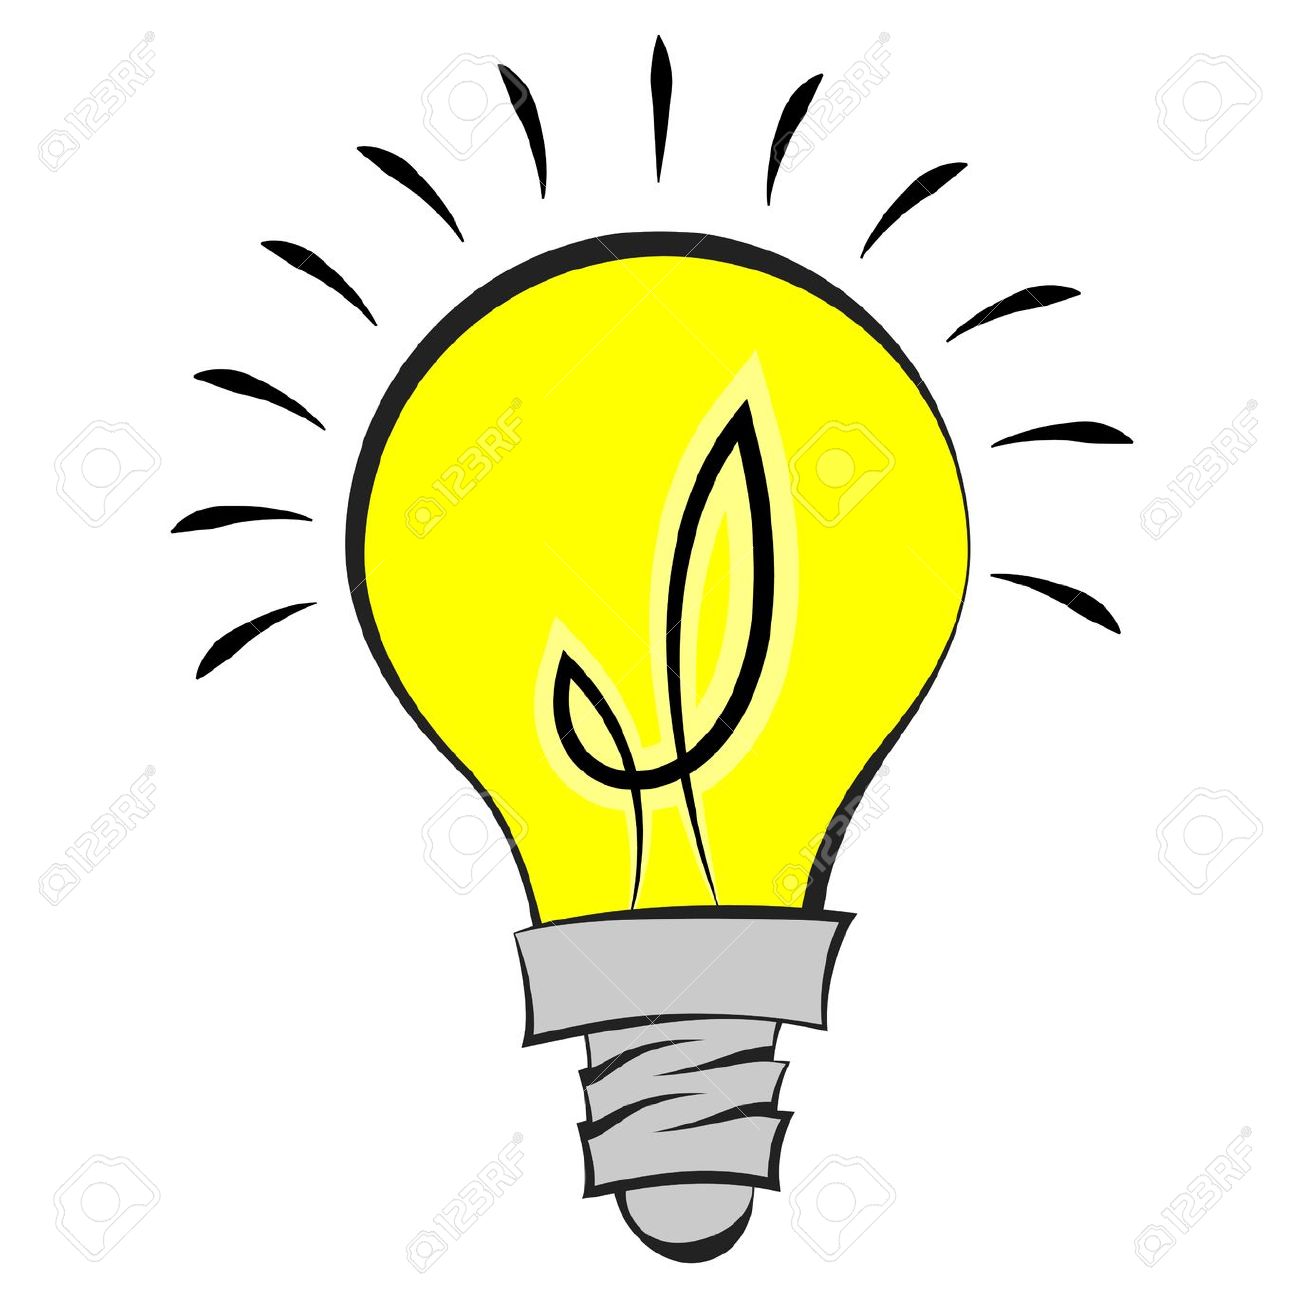 idea light bulb clip art blac